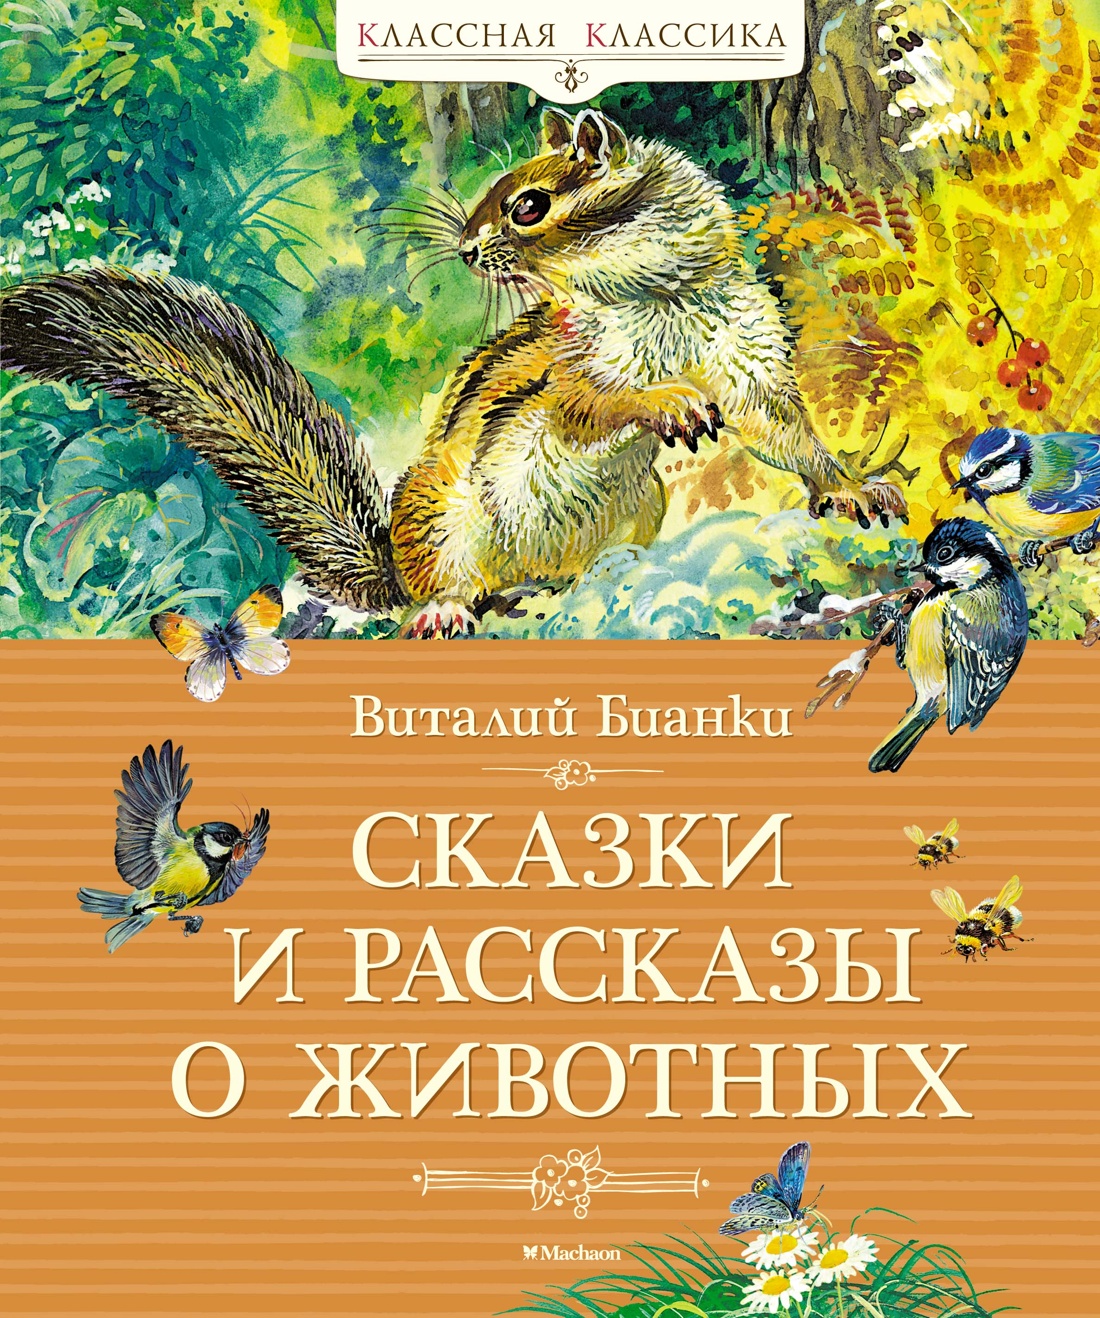 Бианки Виталий Валентинович - Сказки и рассказы о животных